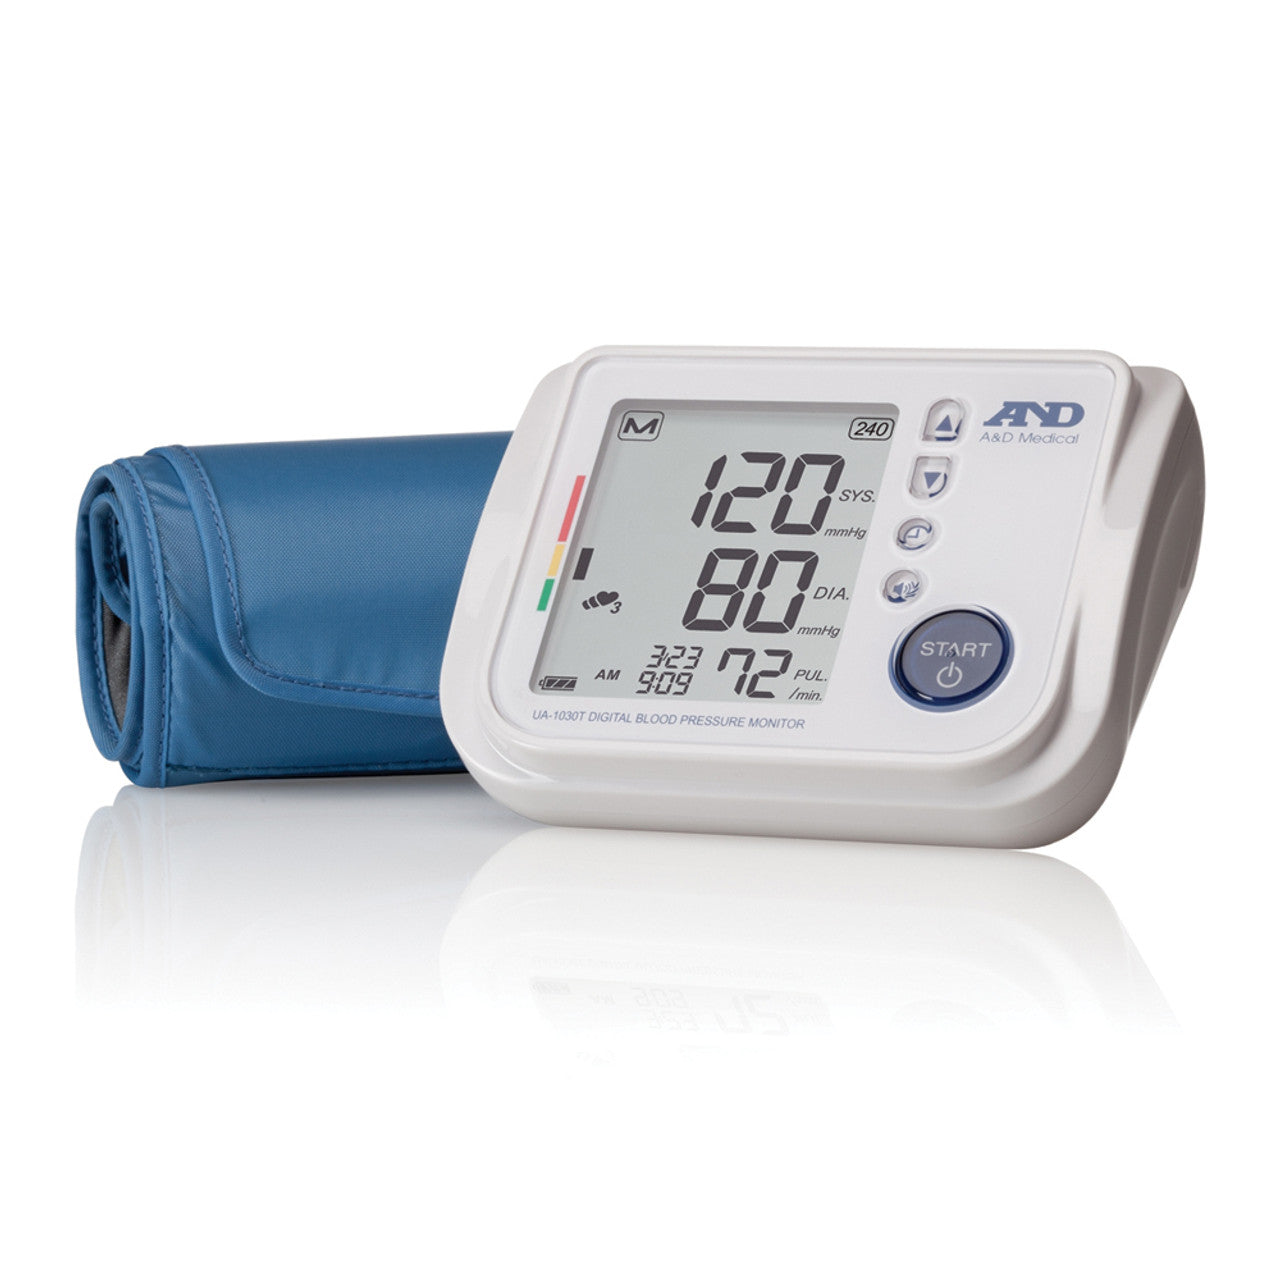 AMD Talking Blood Pressure monitor with blue medium sized arm cuff.